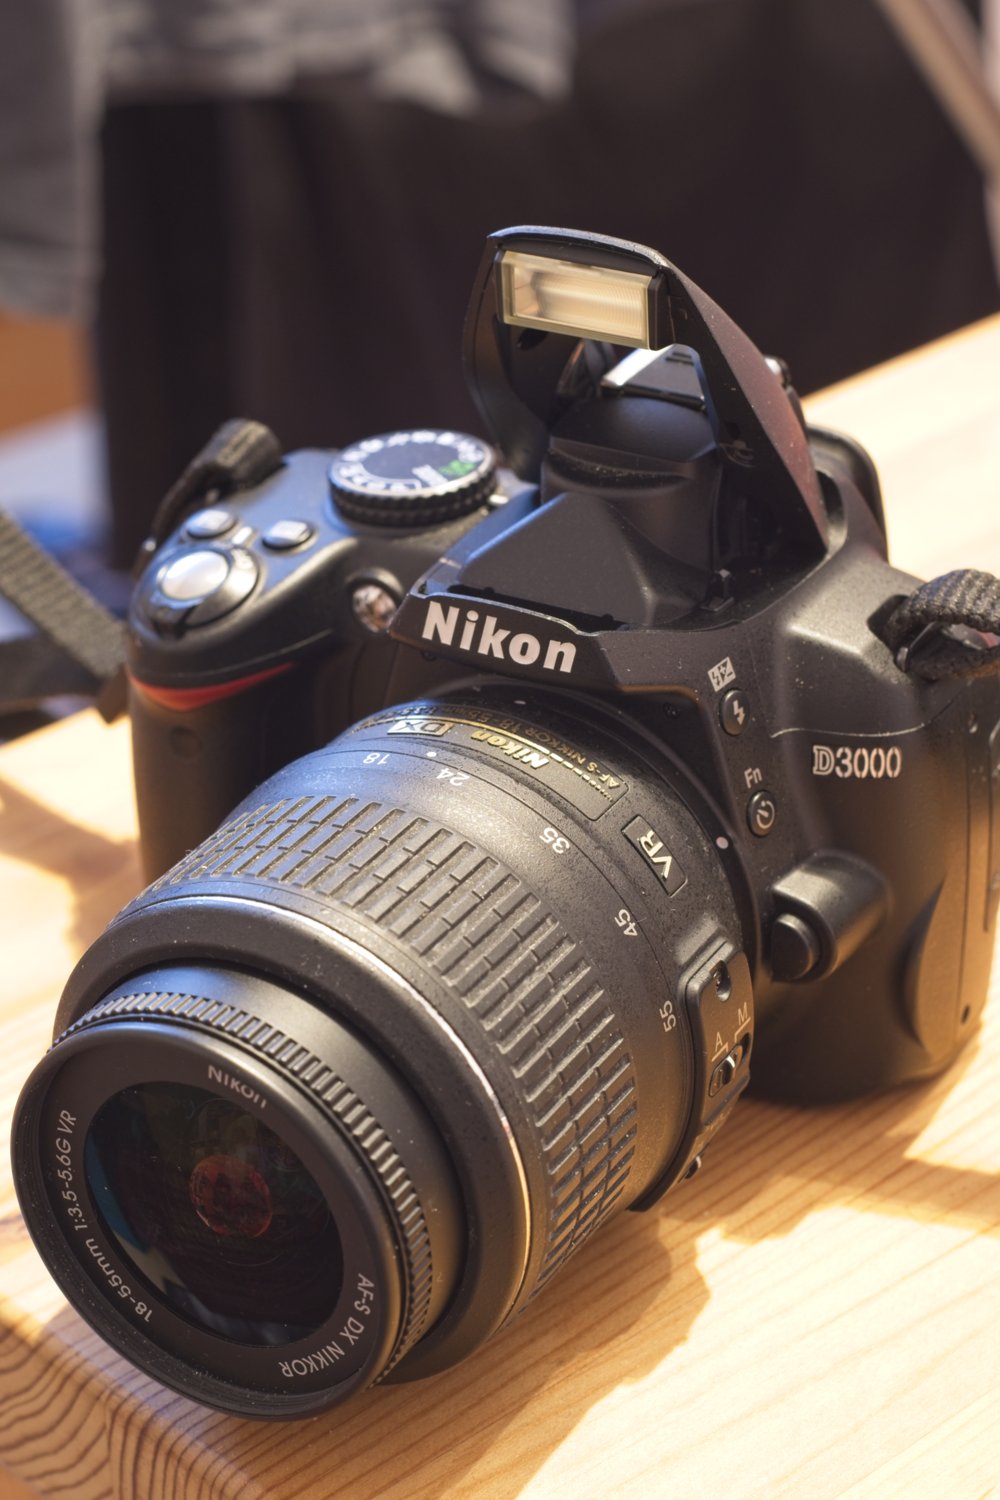 Meine erste Kamera, mein ganzer Stolz: Nikon D3000